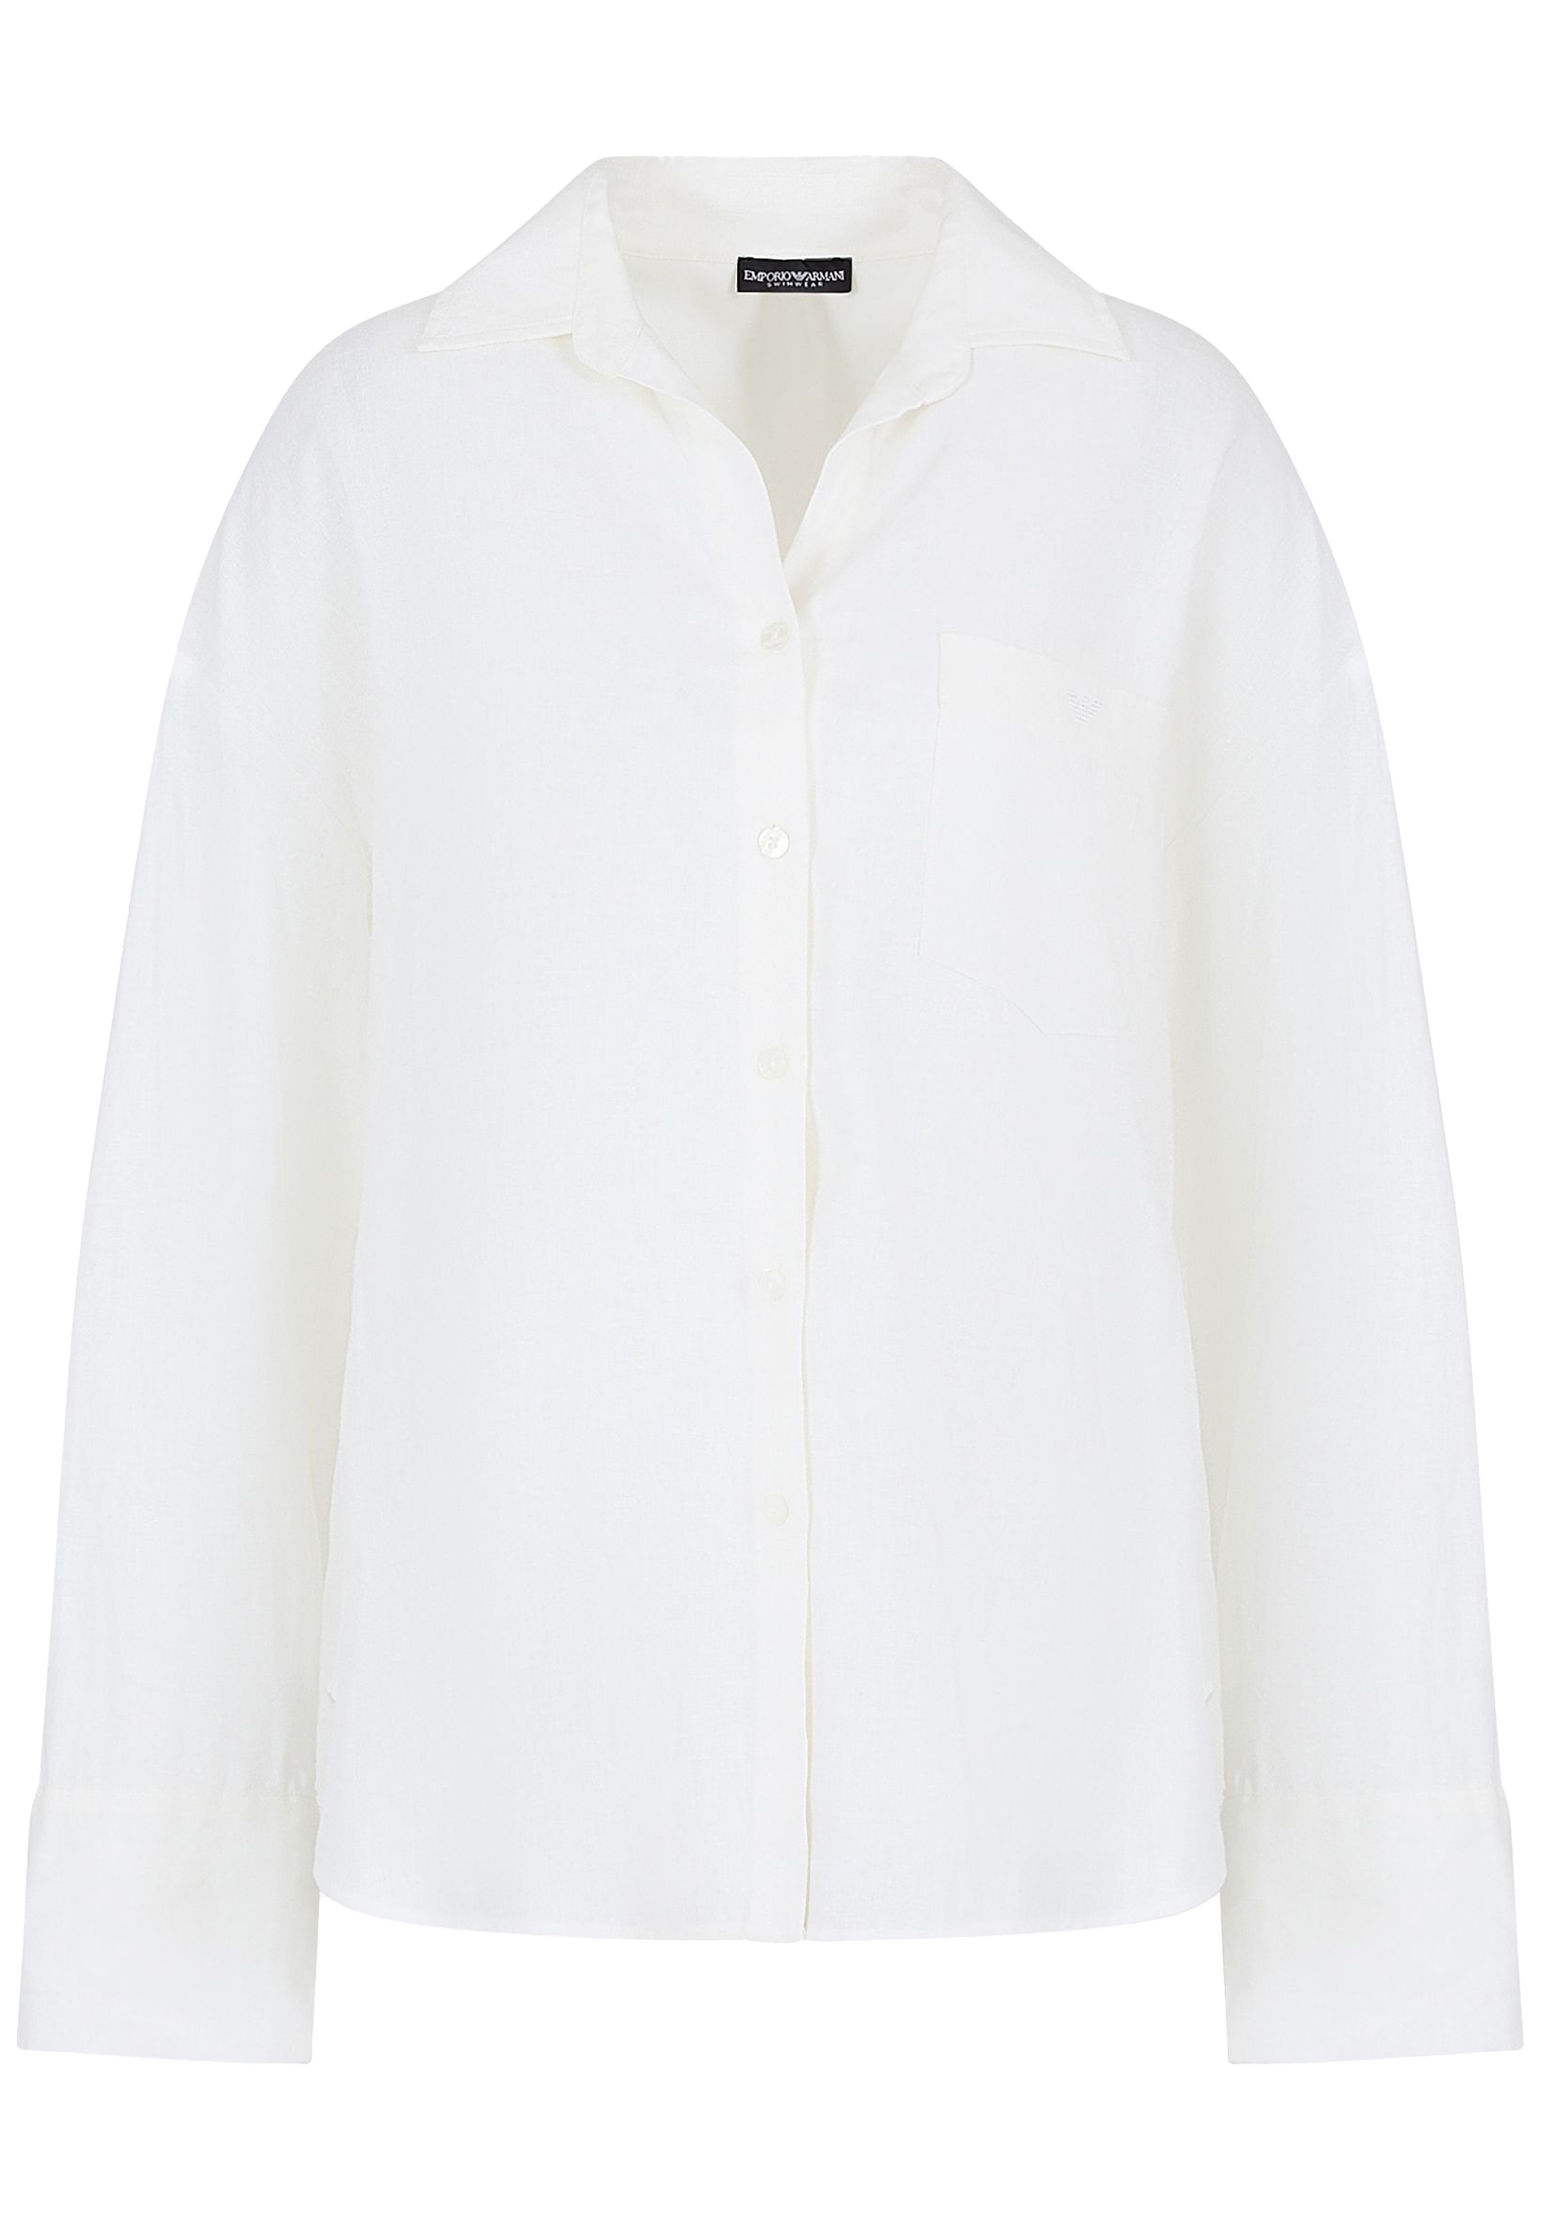 Рубашка EMPORIO ARMANI Белый, размер S/M 176912 - фото 1